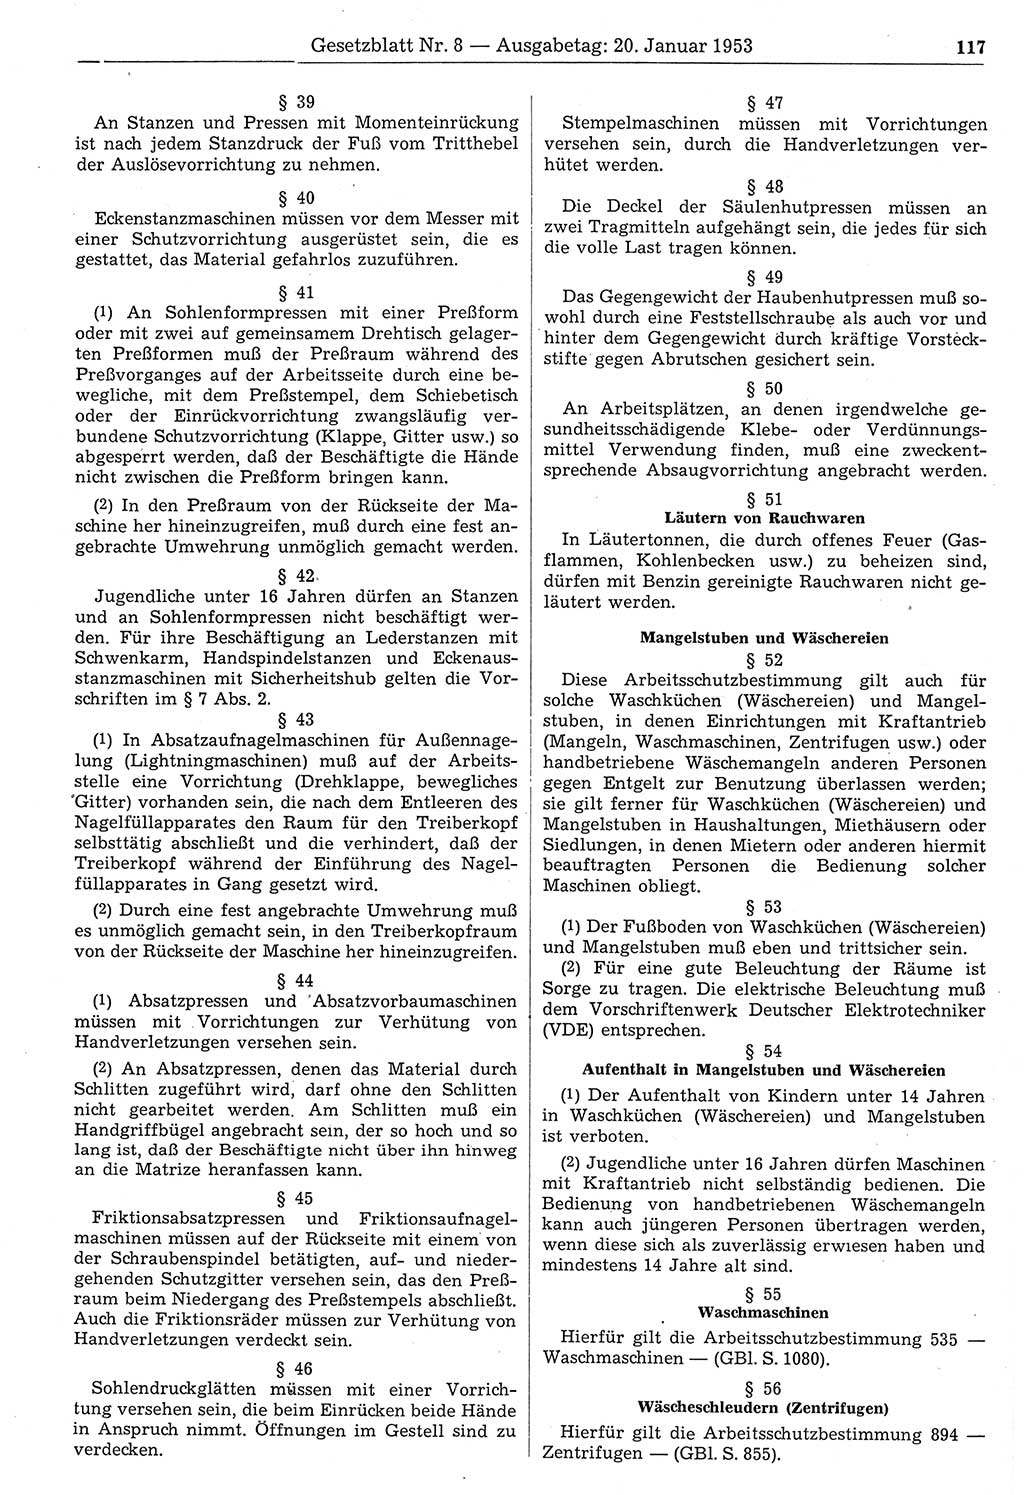 Gesetzblatt (GBl.) der Deutschen Demokratischen Republik (DDR) 1953, Seite 117 (GBl. DDR 1953, S. 117)